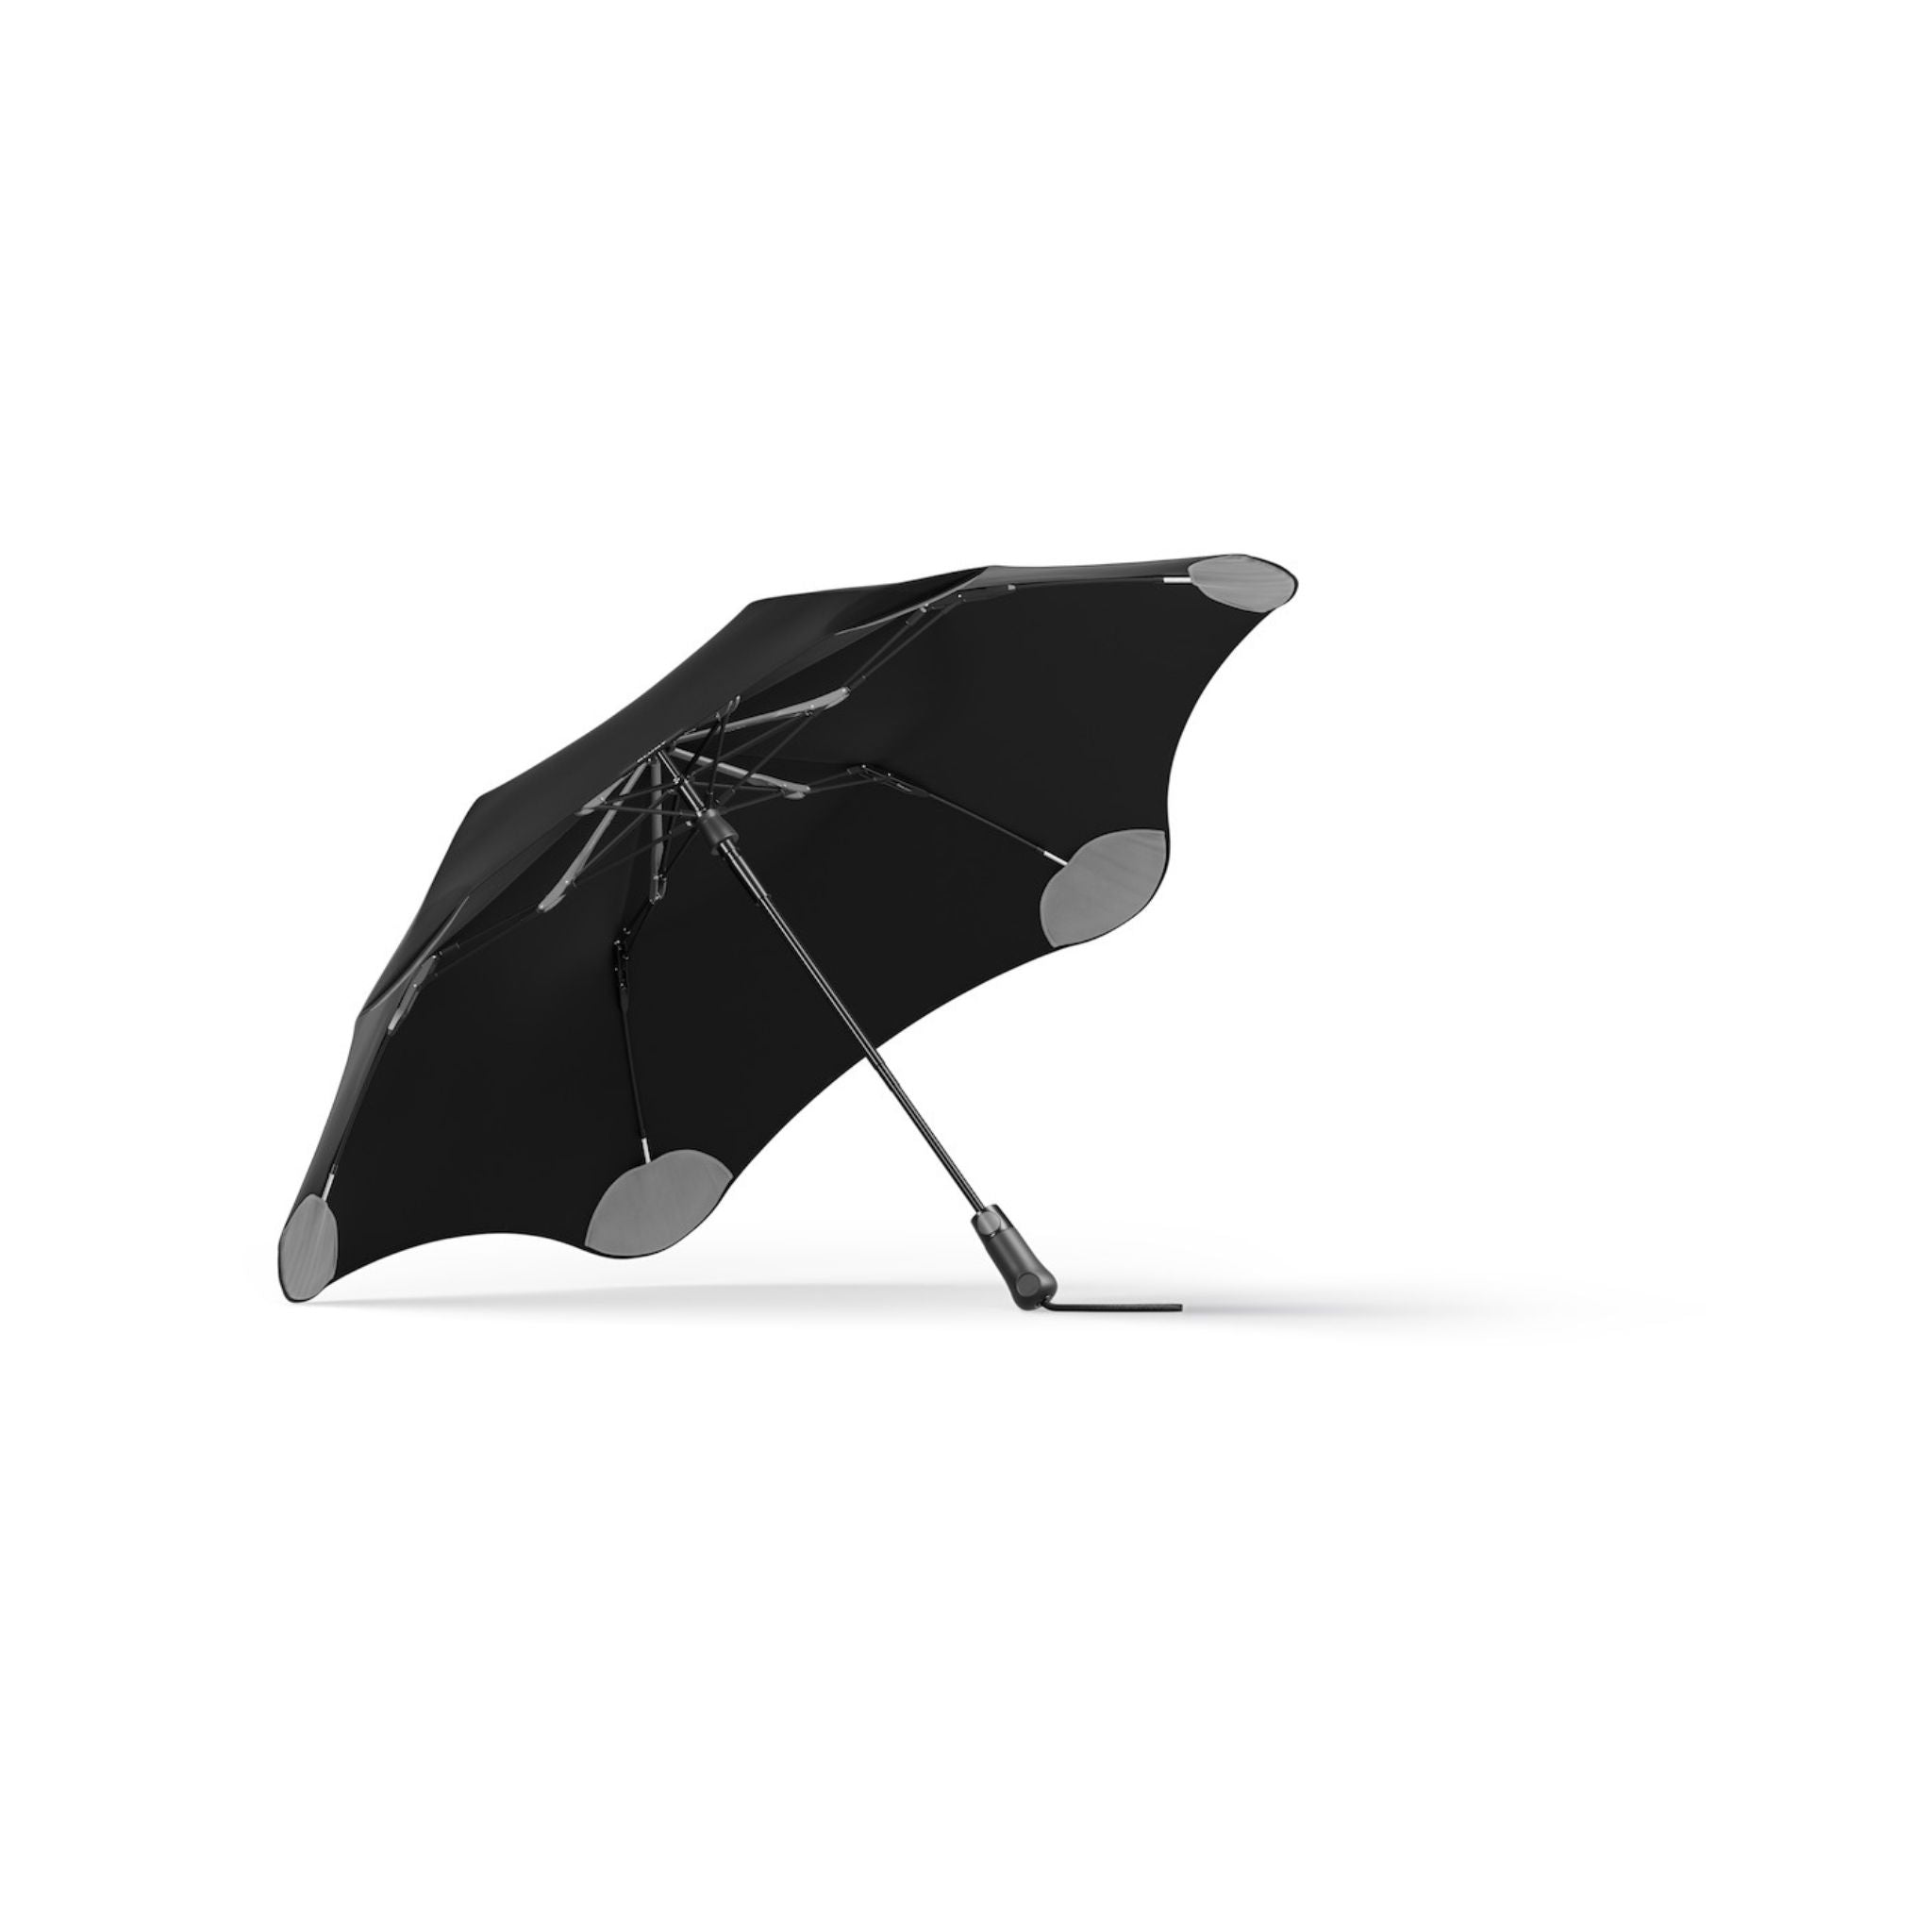 The Metro Compact Umbrella